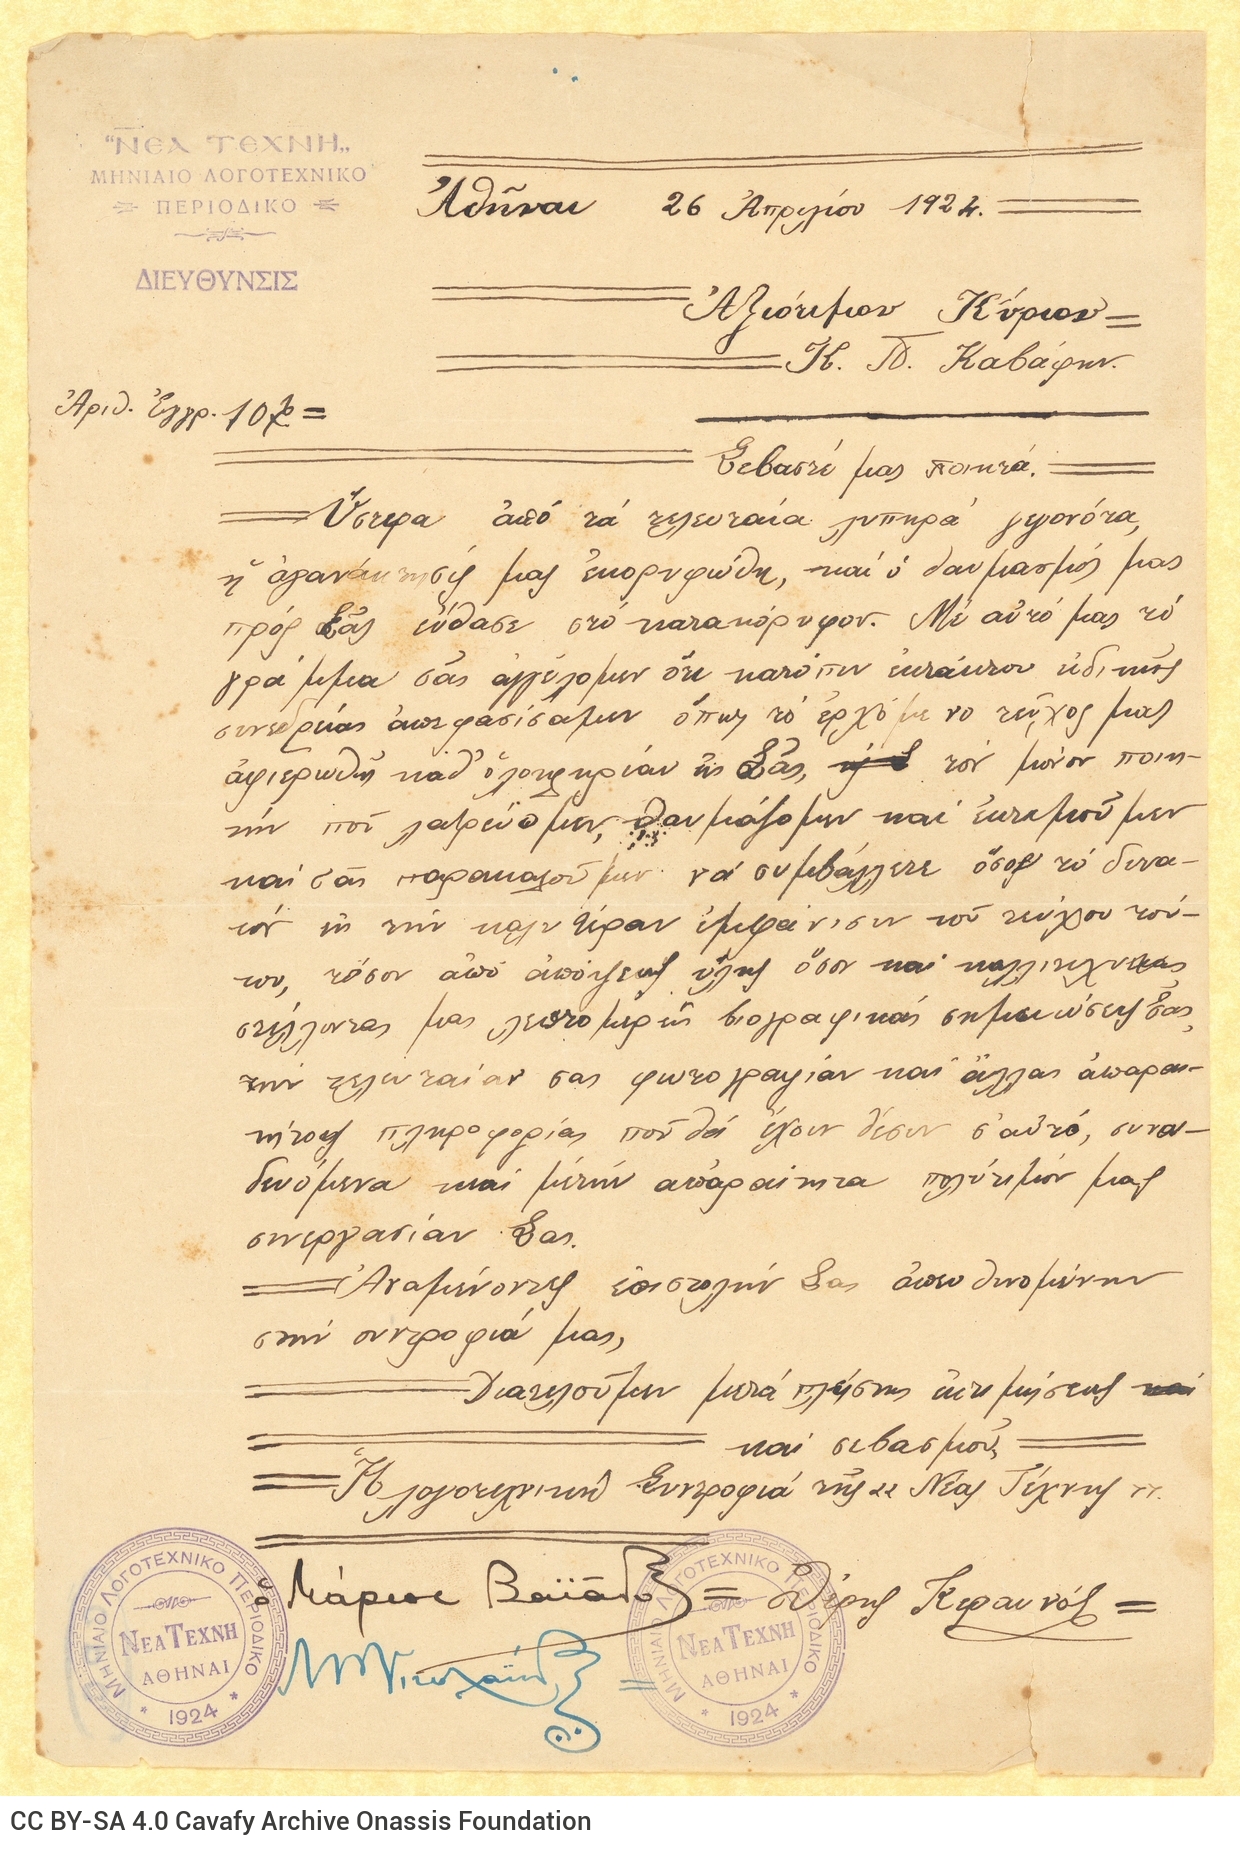 Χειρόγραφη επιστολή των Μ. Βαϊάνου. Θ. Κεραυνού και Μ. Νικολαΐδη εκ μέ